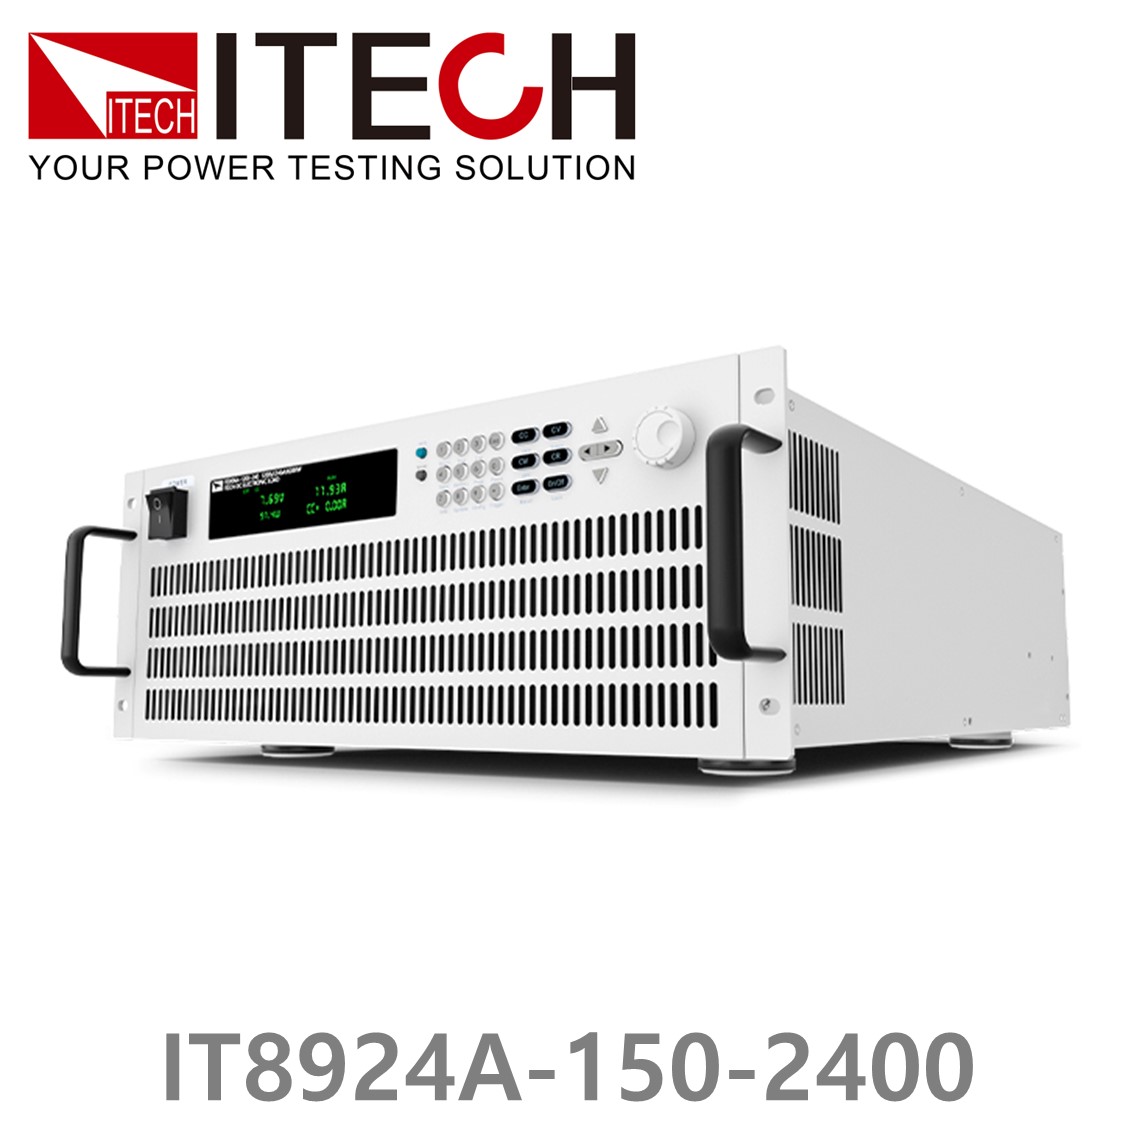 [ ITECH ] IT8924A-150-2400  고성능 고전력 DC 전자로드 150V/2400A/24kW (27U)